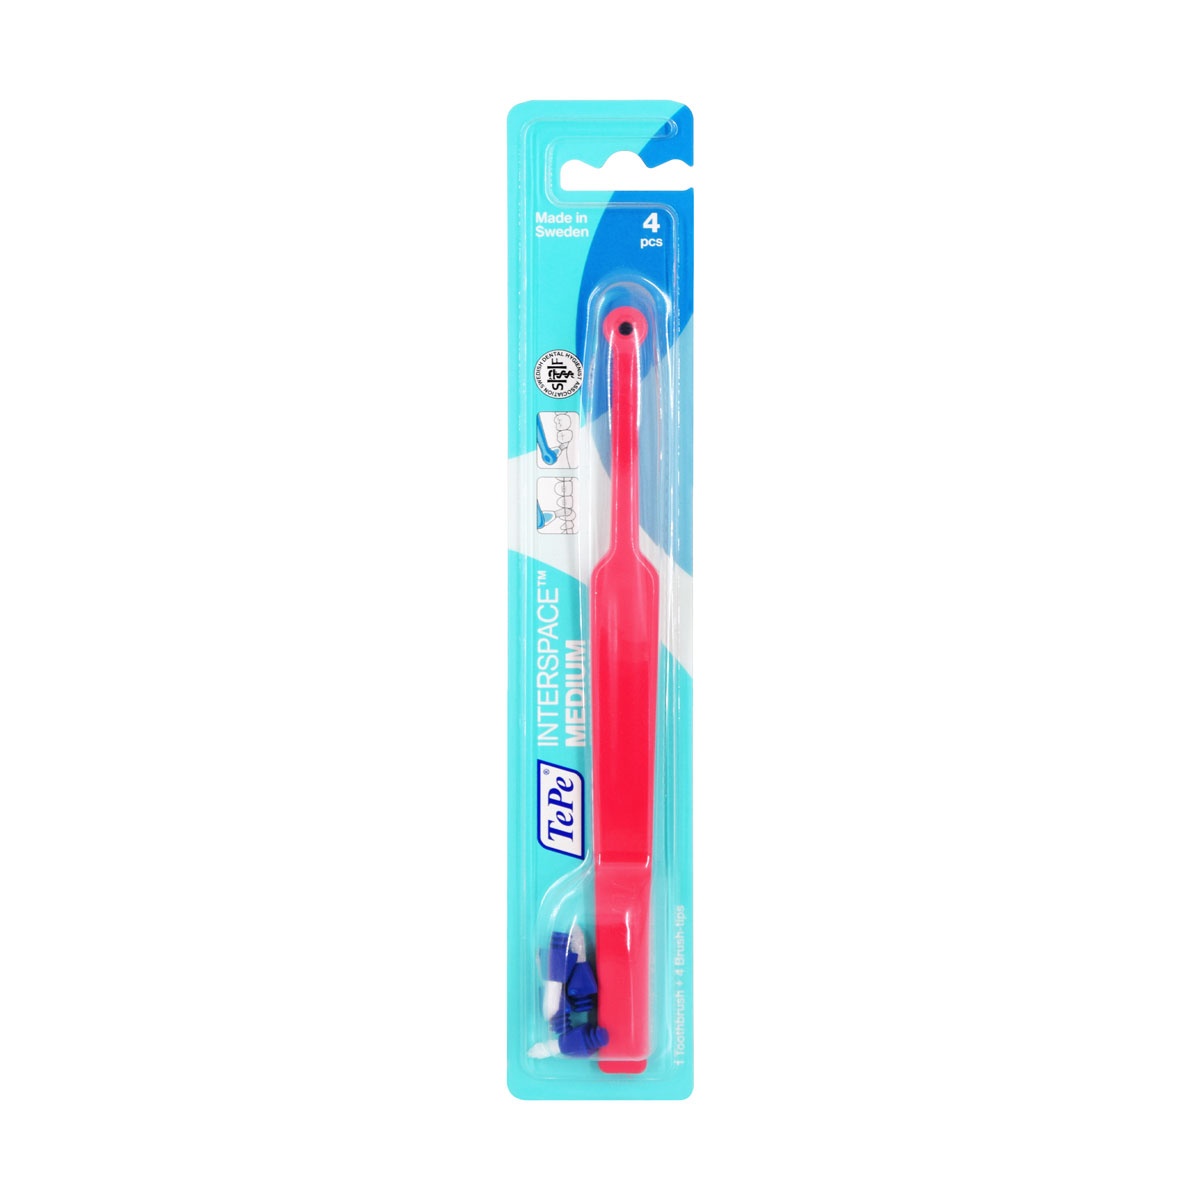  مسواک اینتر اسپیس متوسط تپه | ۴ عدد |پاک کننده قسمت های دور از دسترس دندان ا Tepe Interspace Medium Toothbrush - 4 Pcs